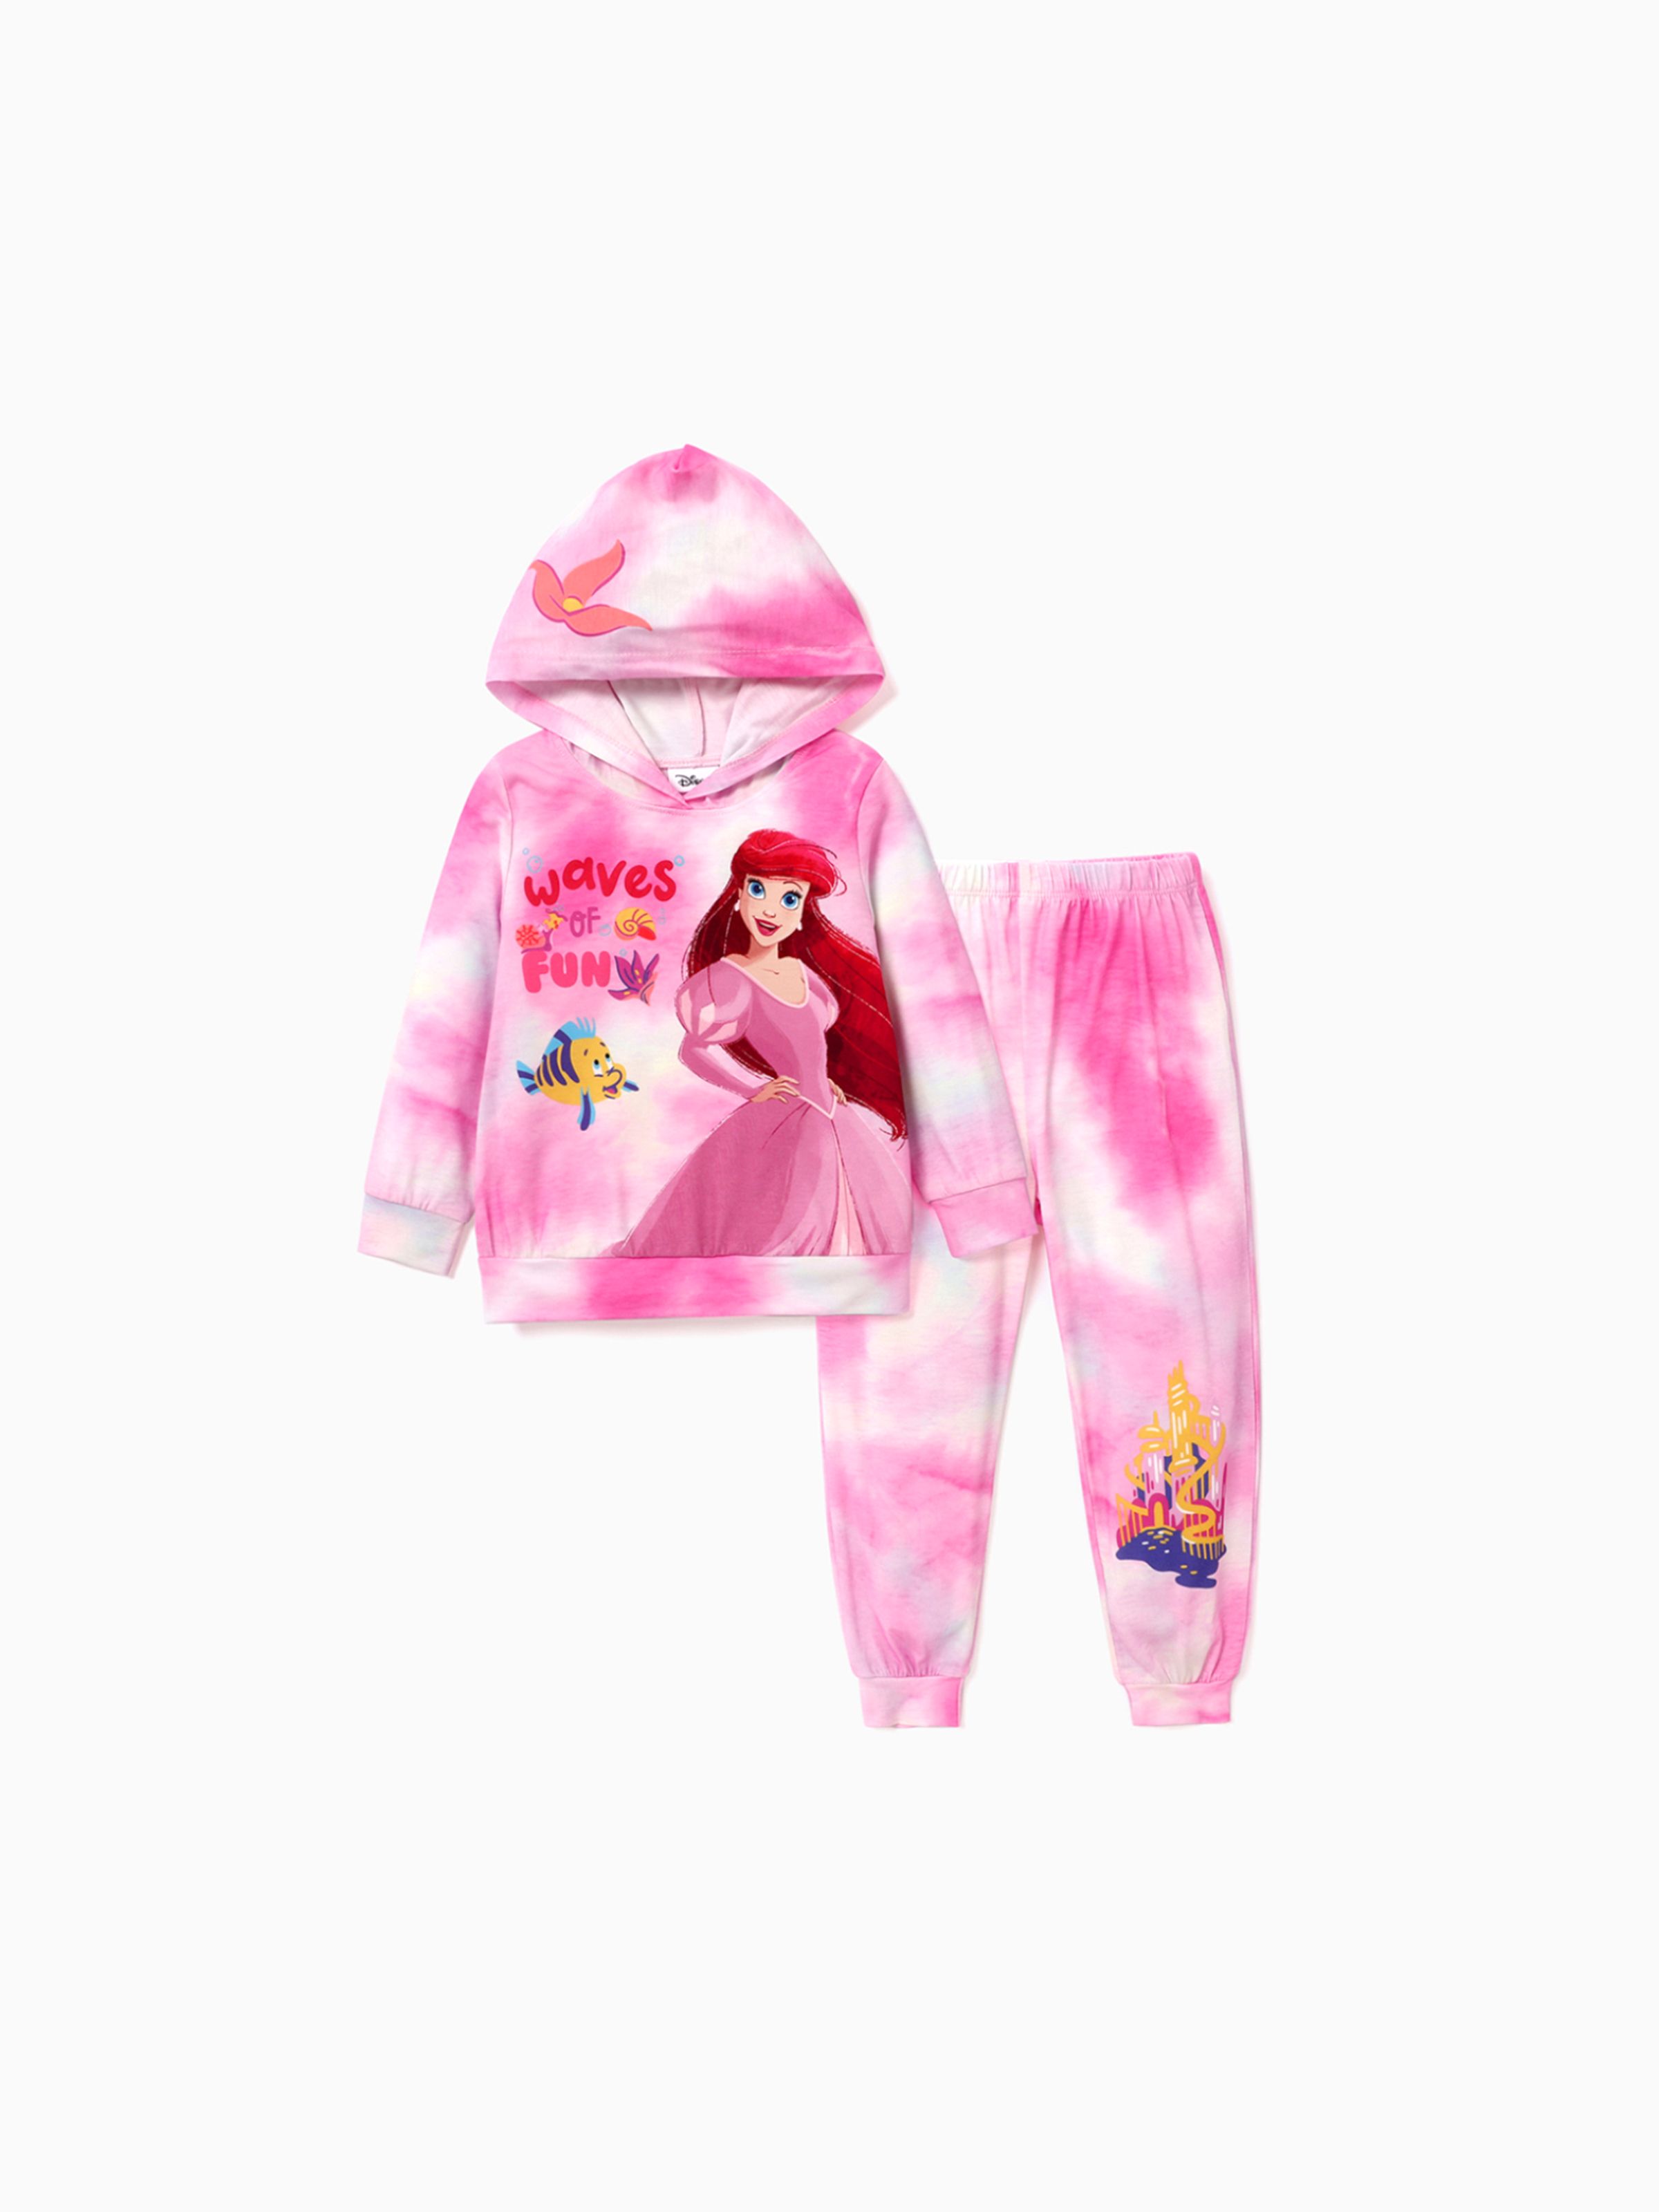 

Disney Princess Toddler/Kids Girl 2pcs Character Print Long-sleeve Top and Pants Set